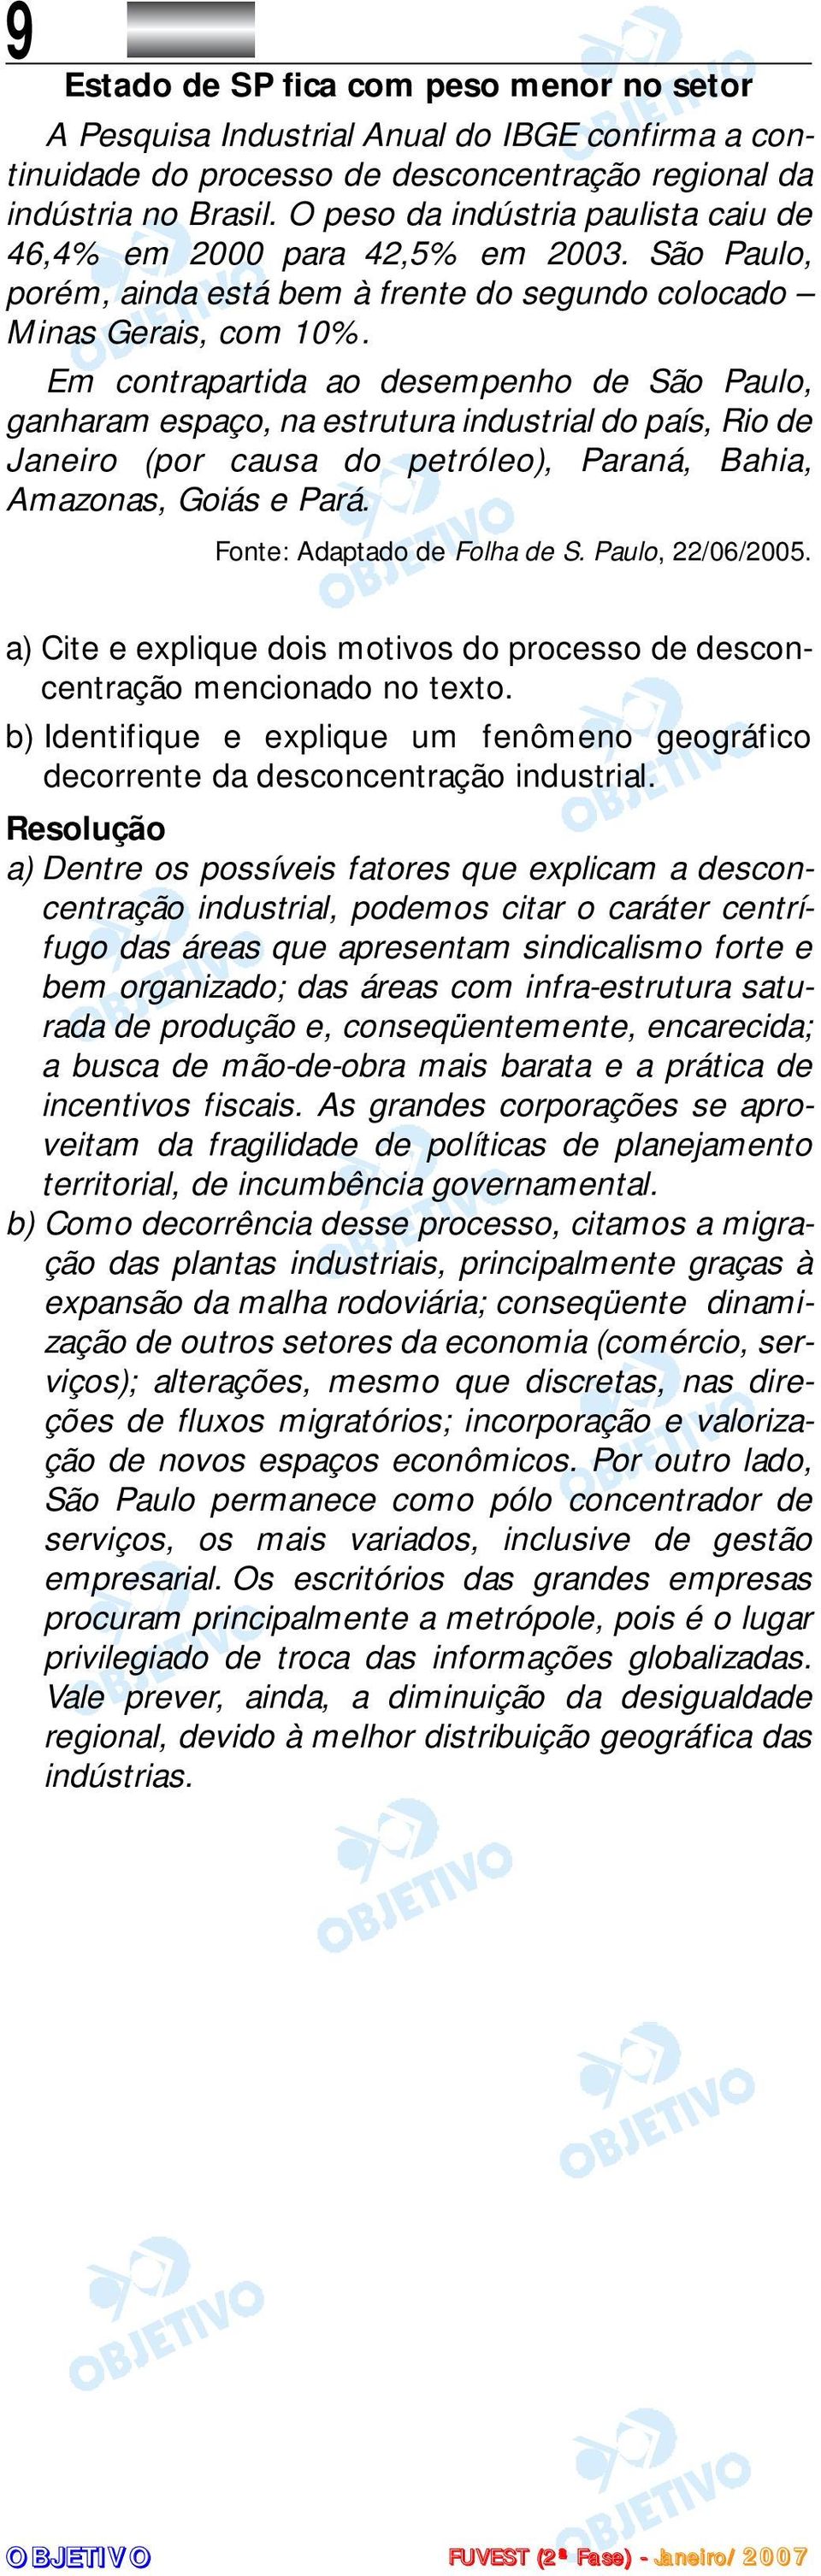 Em contrapartida ao desempenho de São Paulo, ganharam espaço, na estrutura industrial do país, Rio de Janeiro (por causa do petróleo), Paraná, Bahia, Amazonas, Goiás e Pará.